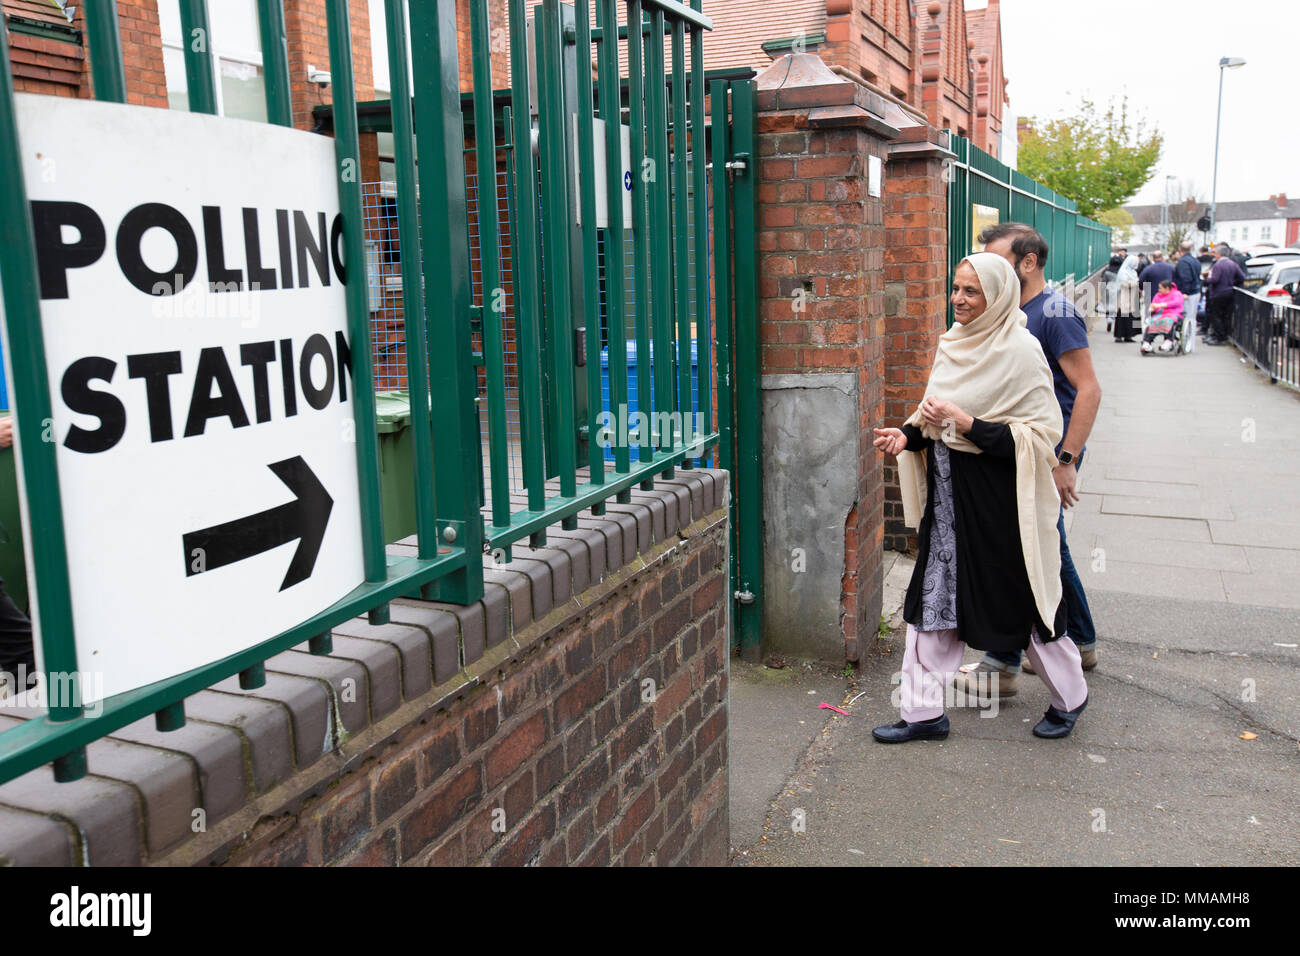 Elettori musulmani che arrivano ad una stazione di polling in Small Heath, Birmingham, per le elezioni locali nel maggio 2018. Foto Stock